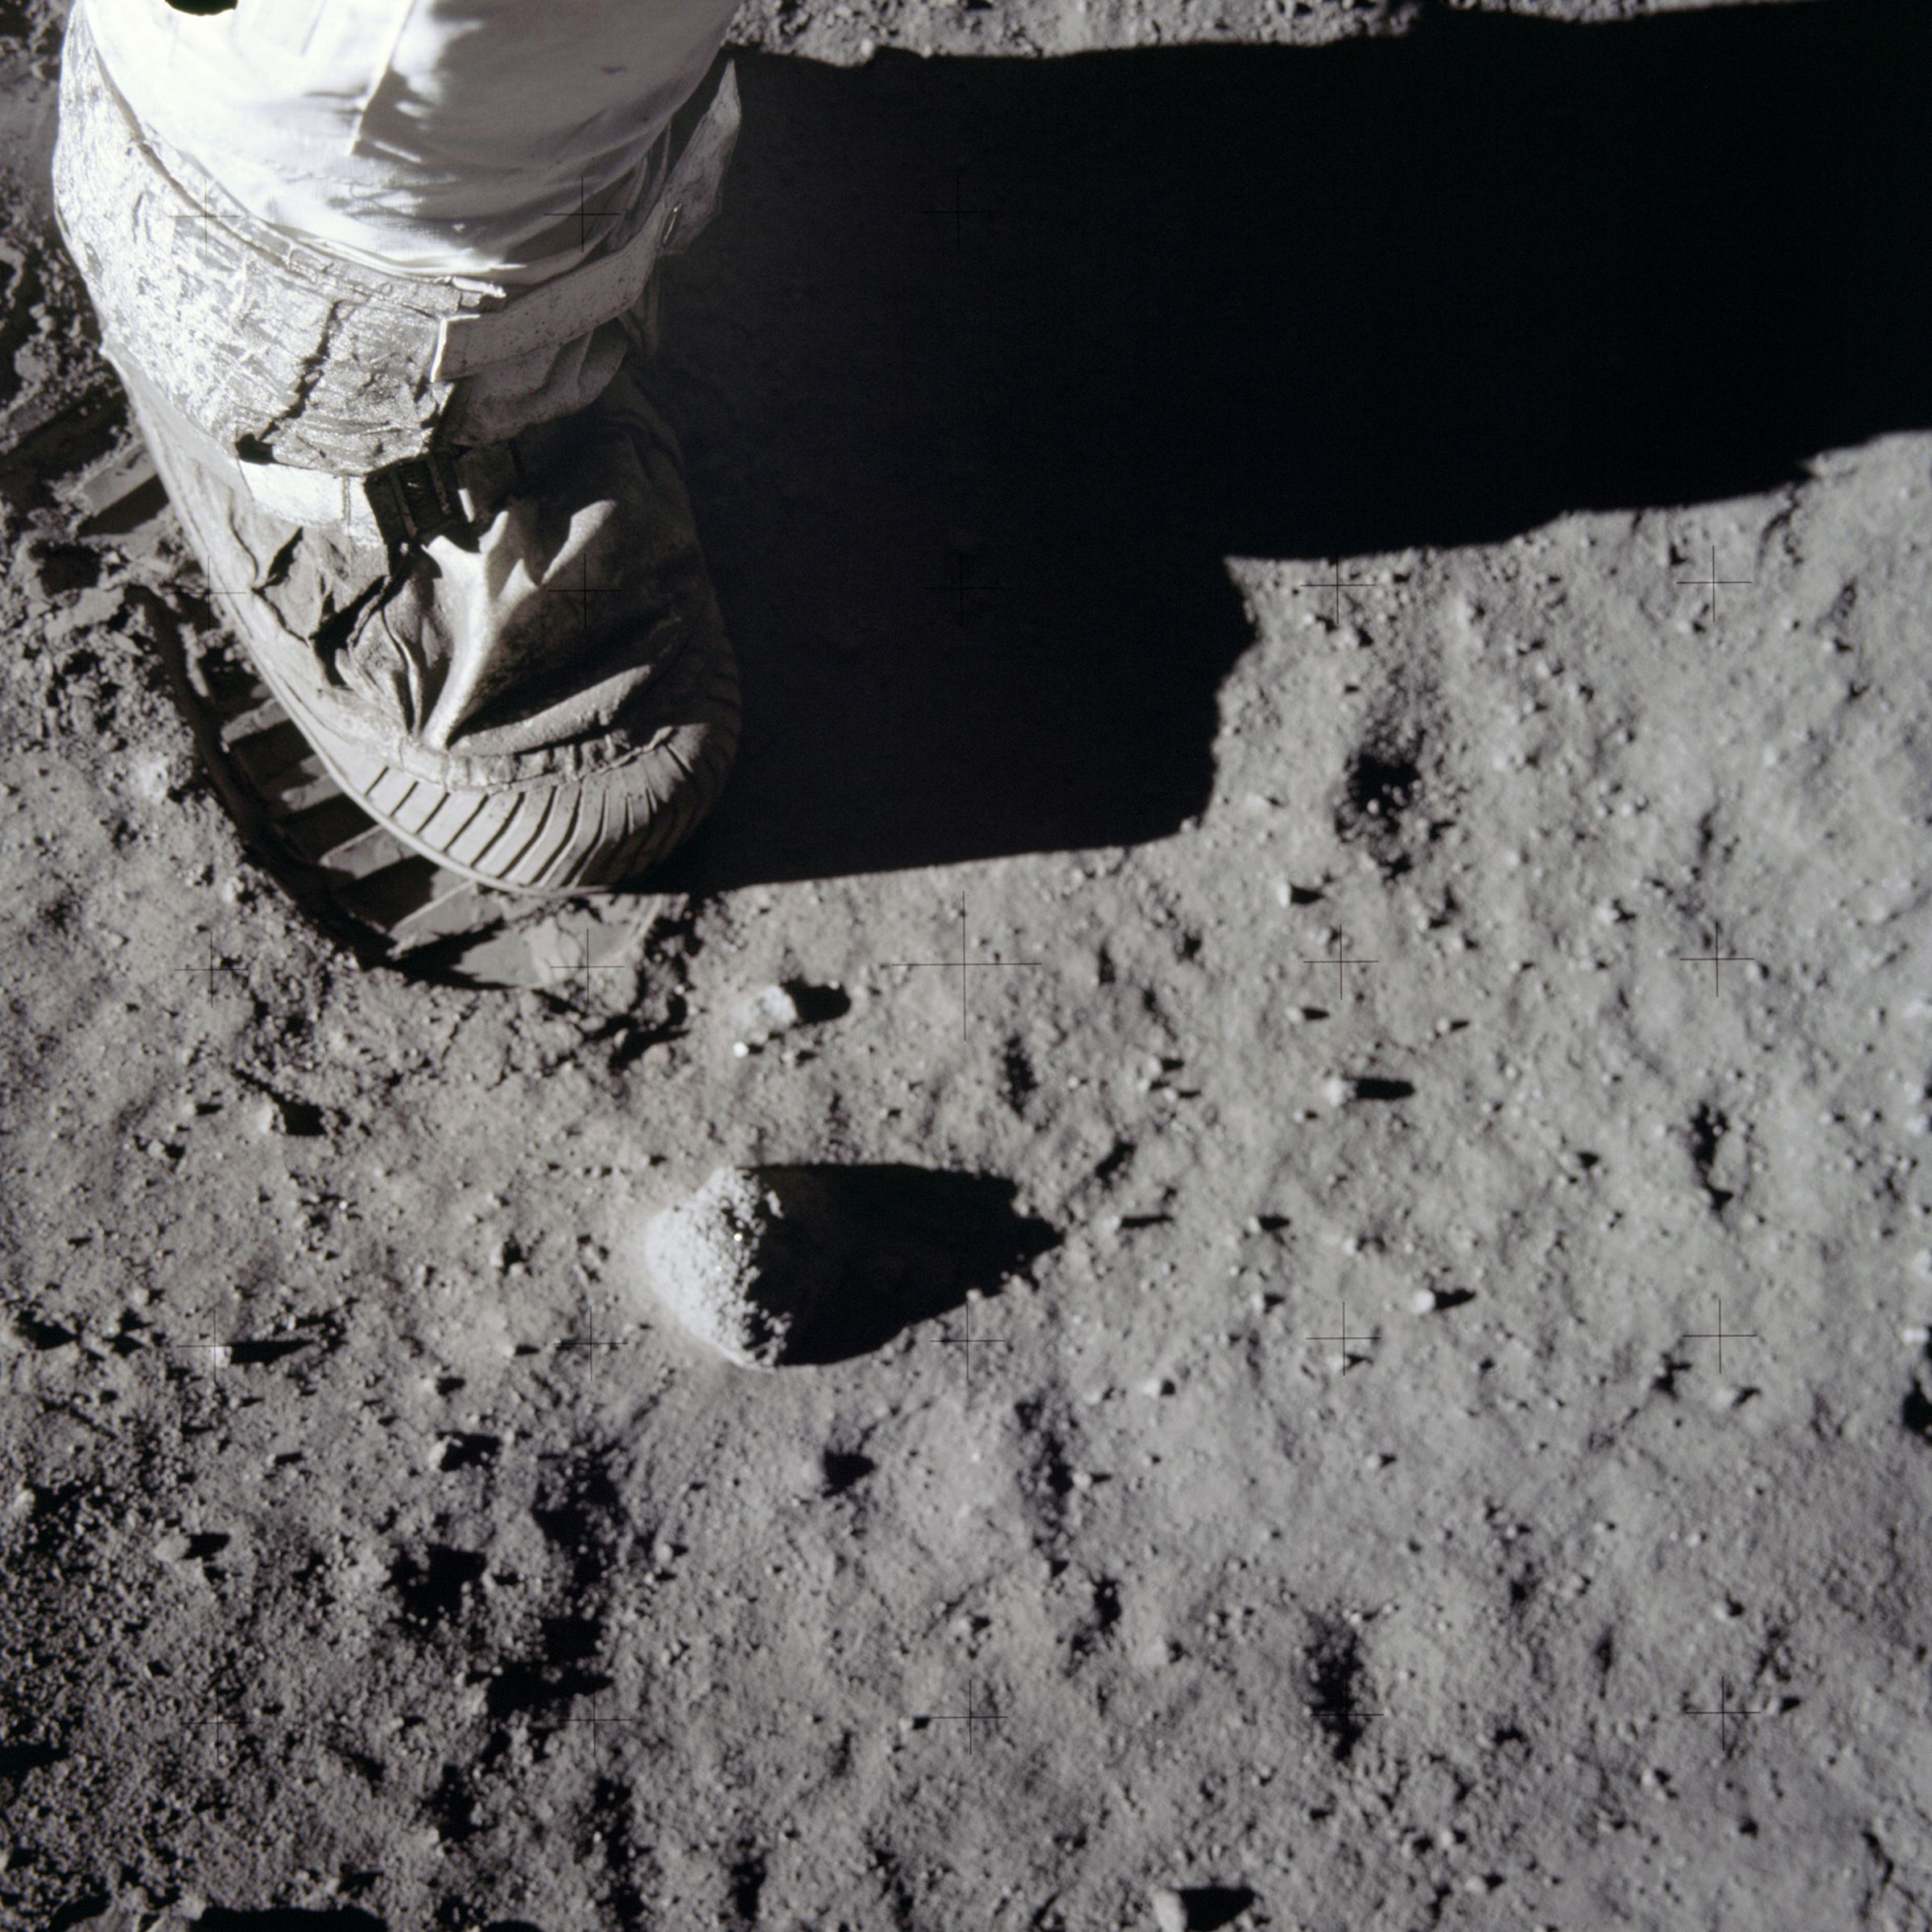 Astronaut footprint on the moon